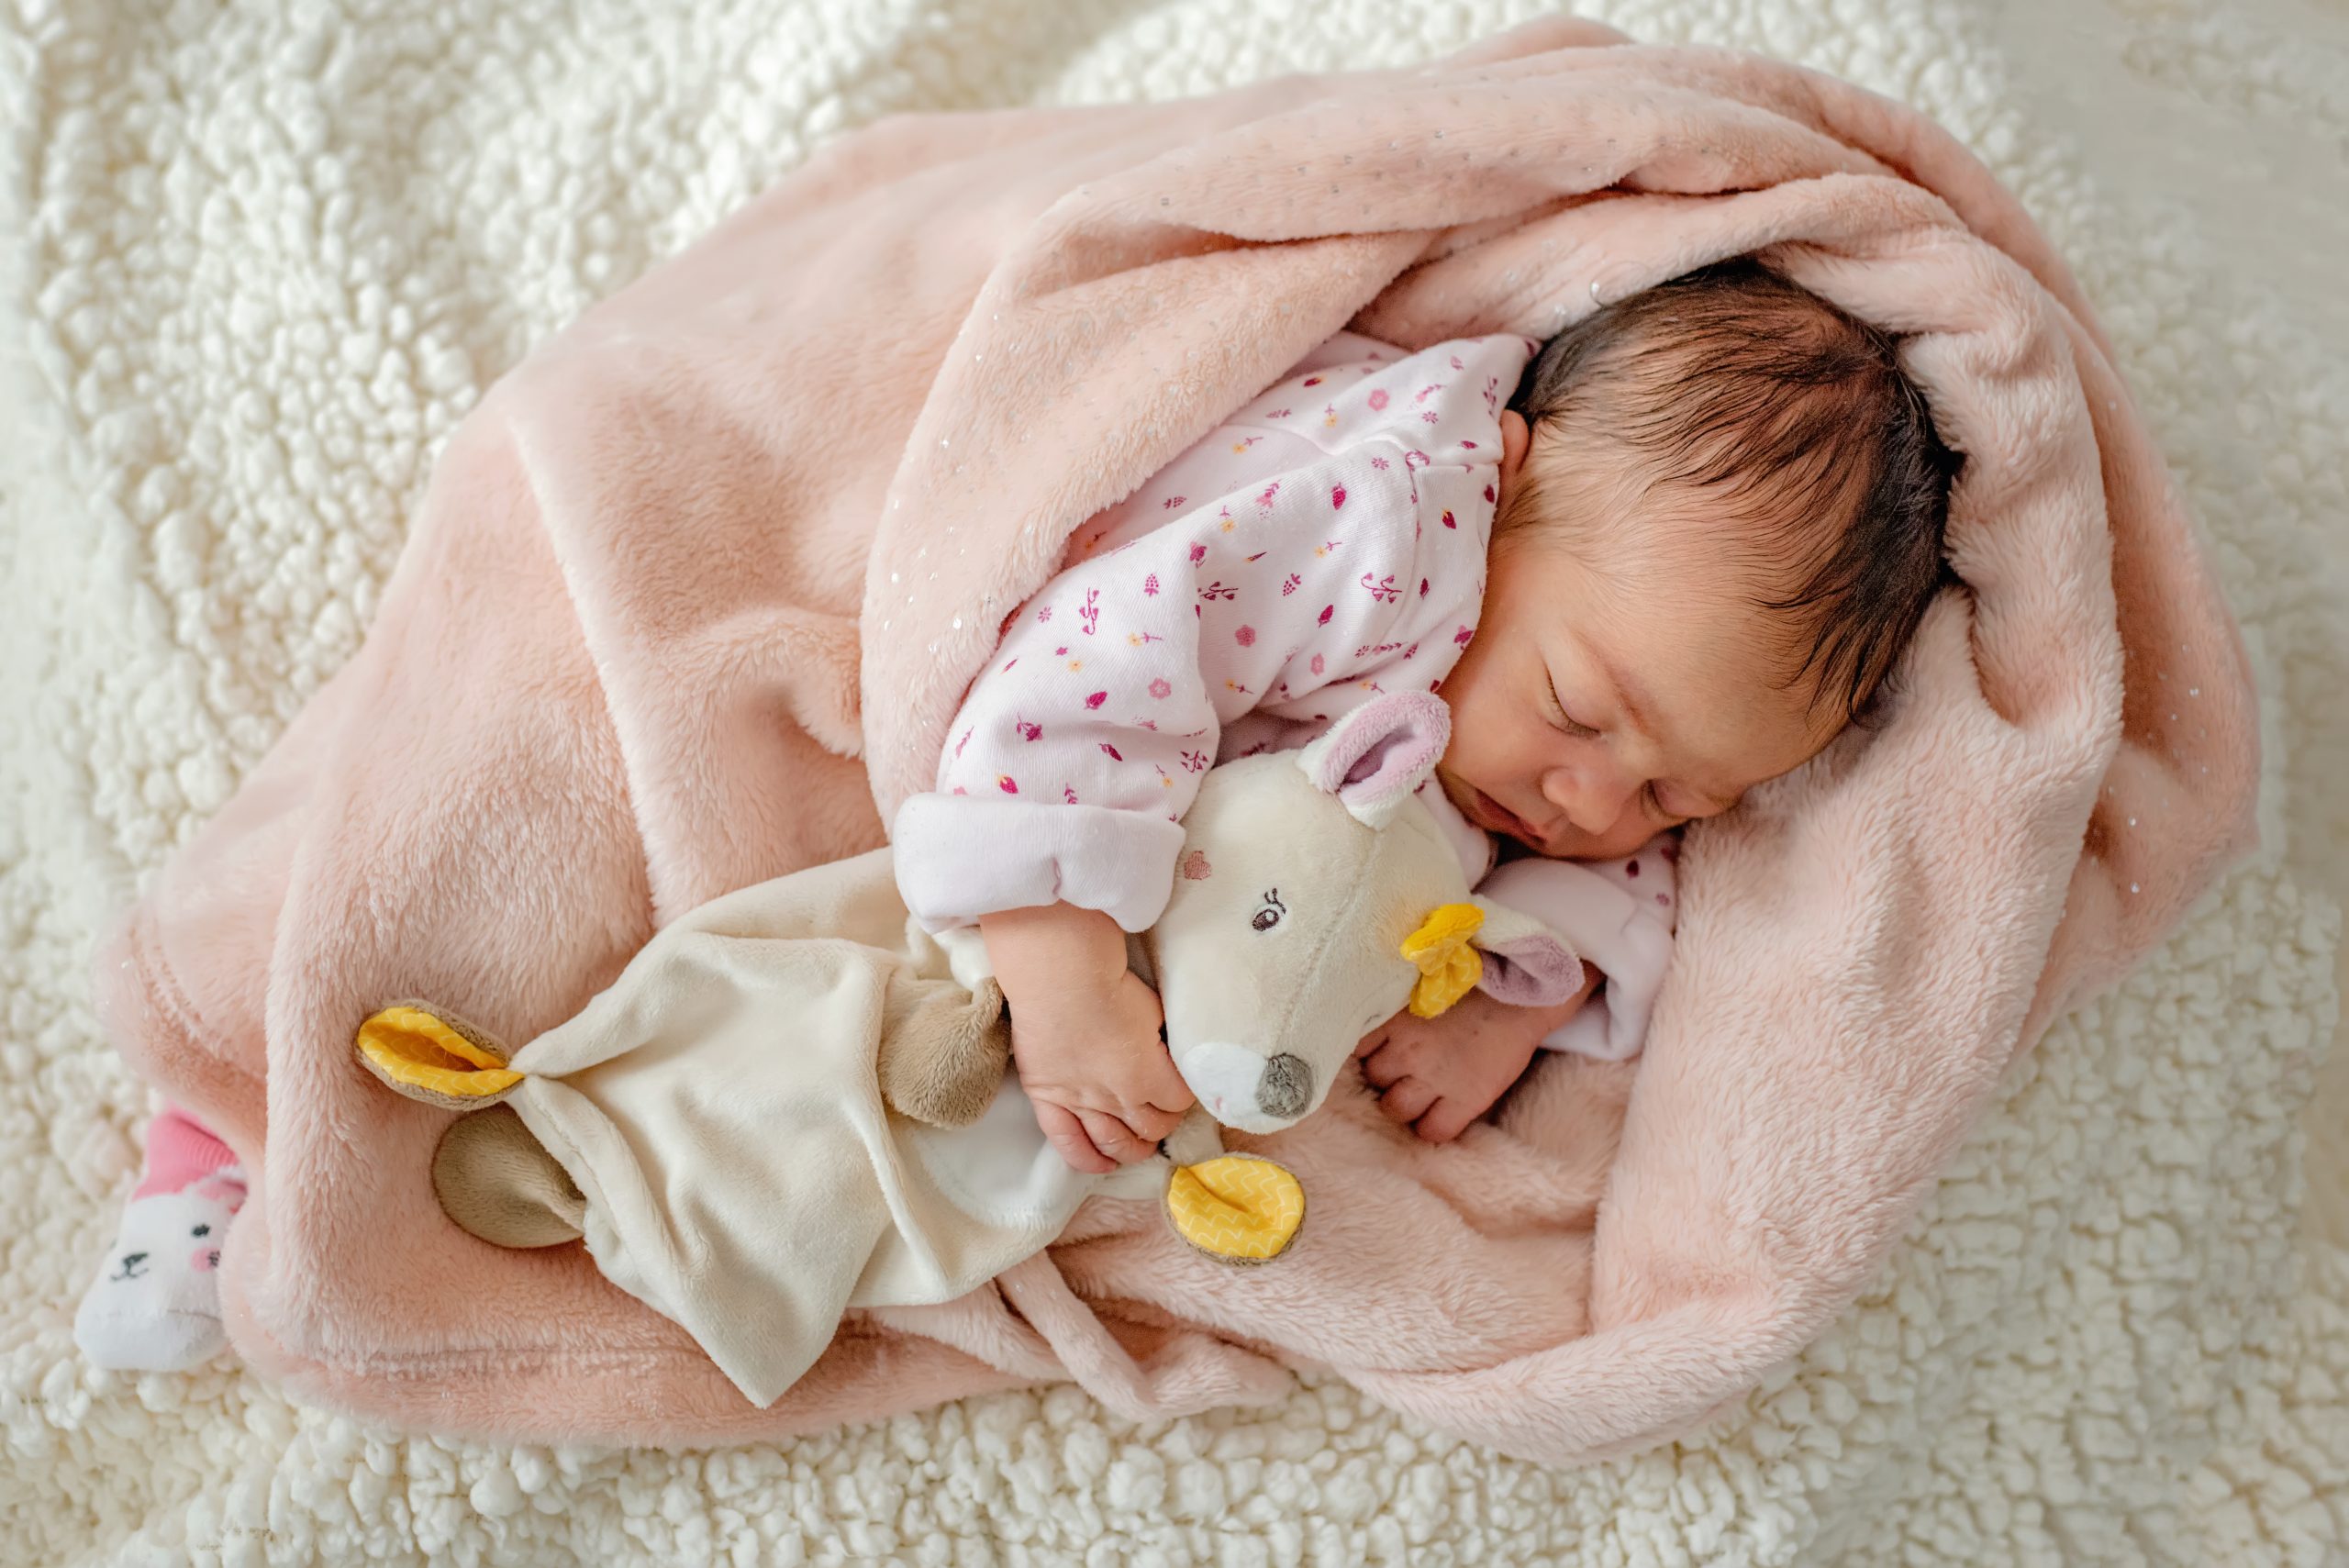 Newborn-Shooting im Wohnzimmer in Durbach, Baby liegt in einer Kiste mit kuscheligen Accessoires